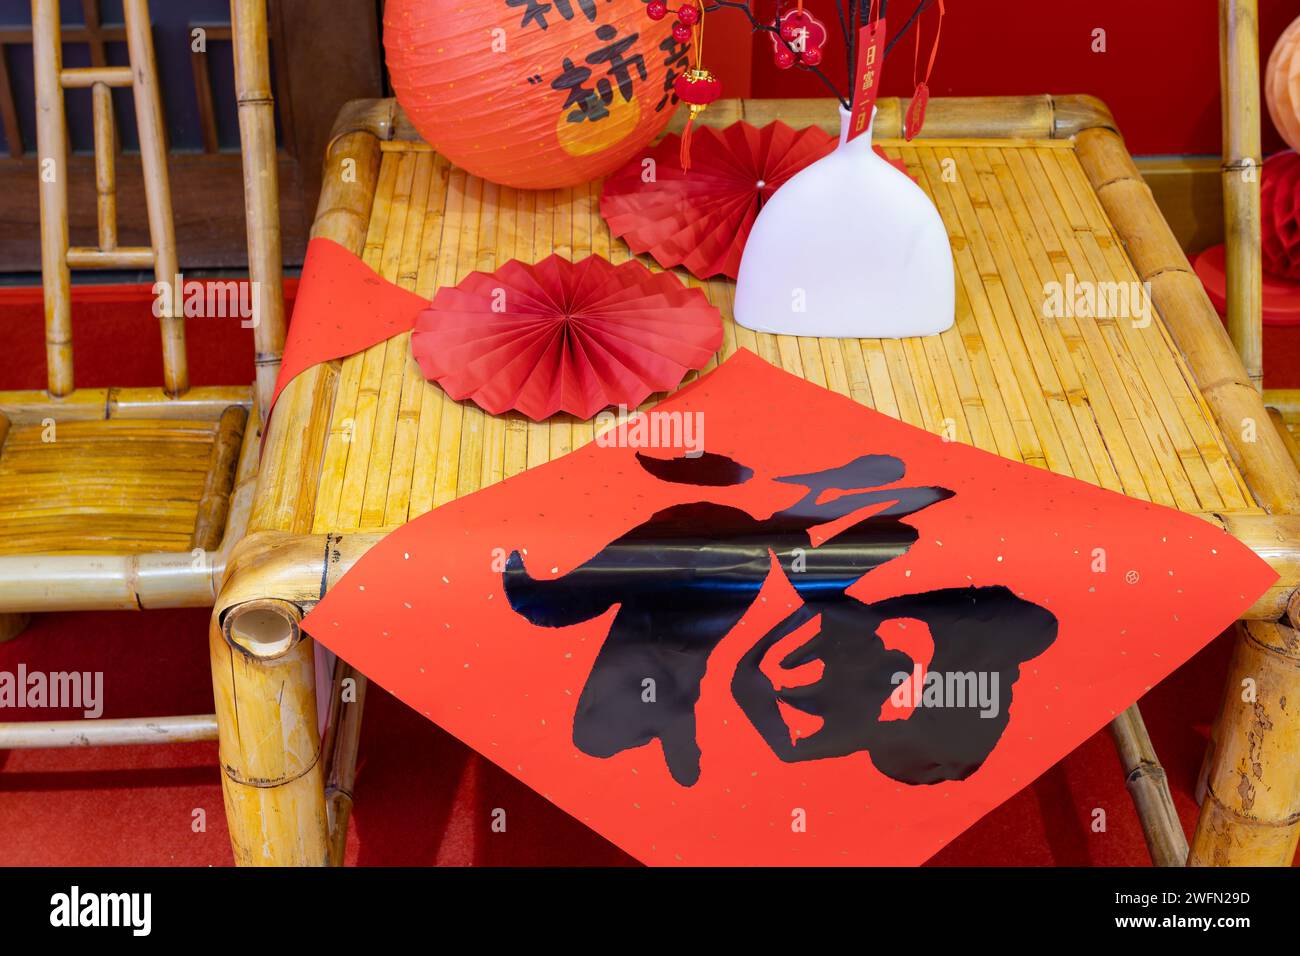 Lanterna e decorazioni del capodanno cinese la traduzione inglese dei personaggi ha tutti i desideri e si arricchisce e prospera Foto Stock